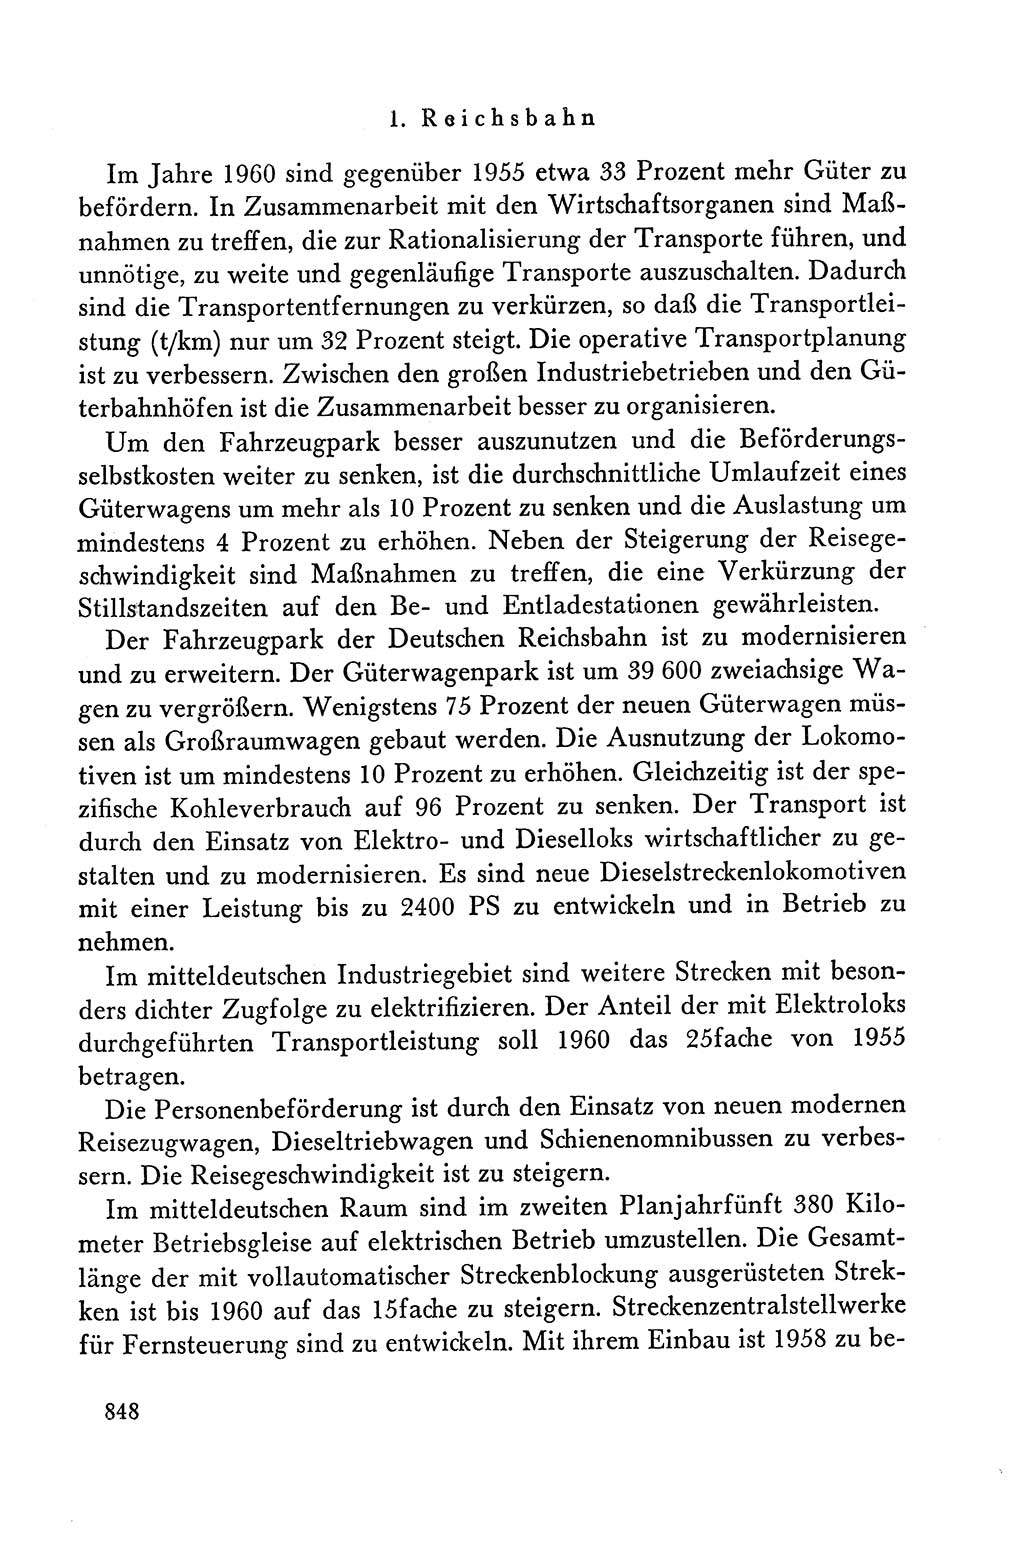 Dokumente der Sozialistischen Einheitspartei Deutschlands (SED) [Deutsche Demokratische Republik (DDR)] 1958-1959, Seite 848 (Dok. SED DDR 1958-1959, S. 848)